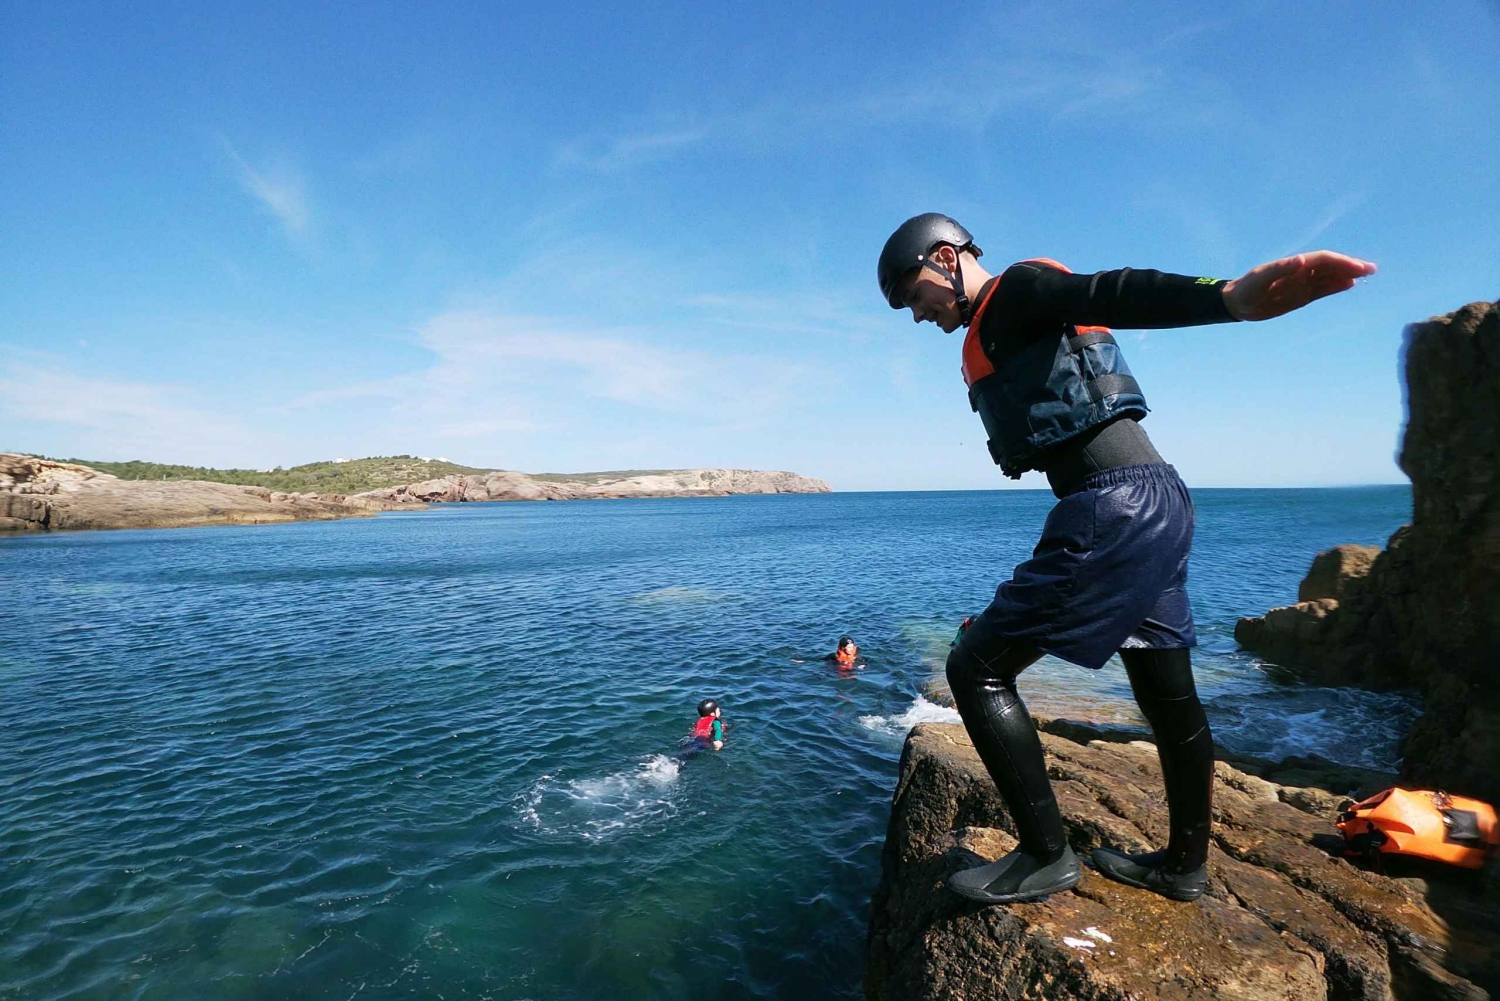 Kids Version - Coasteering with snorkeling: Algarve